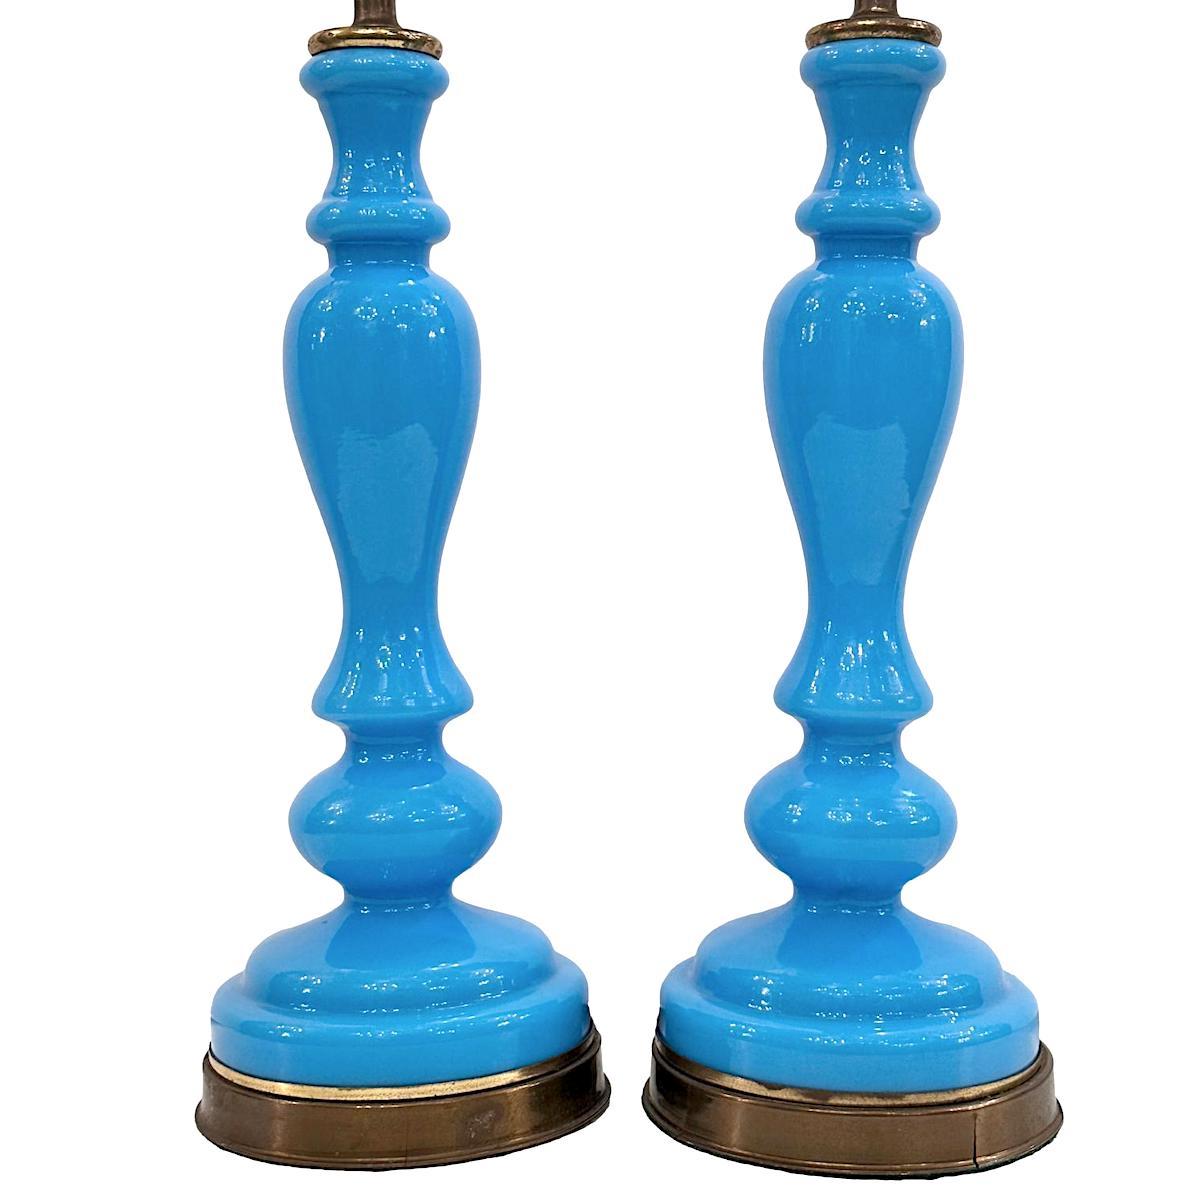 Paire de lampes de table en verre opalin bleu français des années 1920.

Mesures :
Hauteur du corps : 14
Hauteur jusqu'à l'appui de l'abat-jour : 23